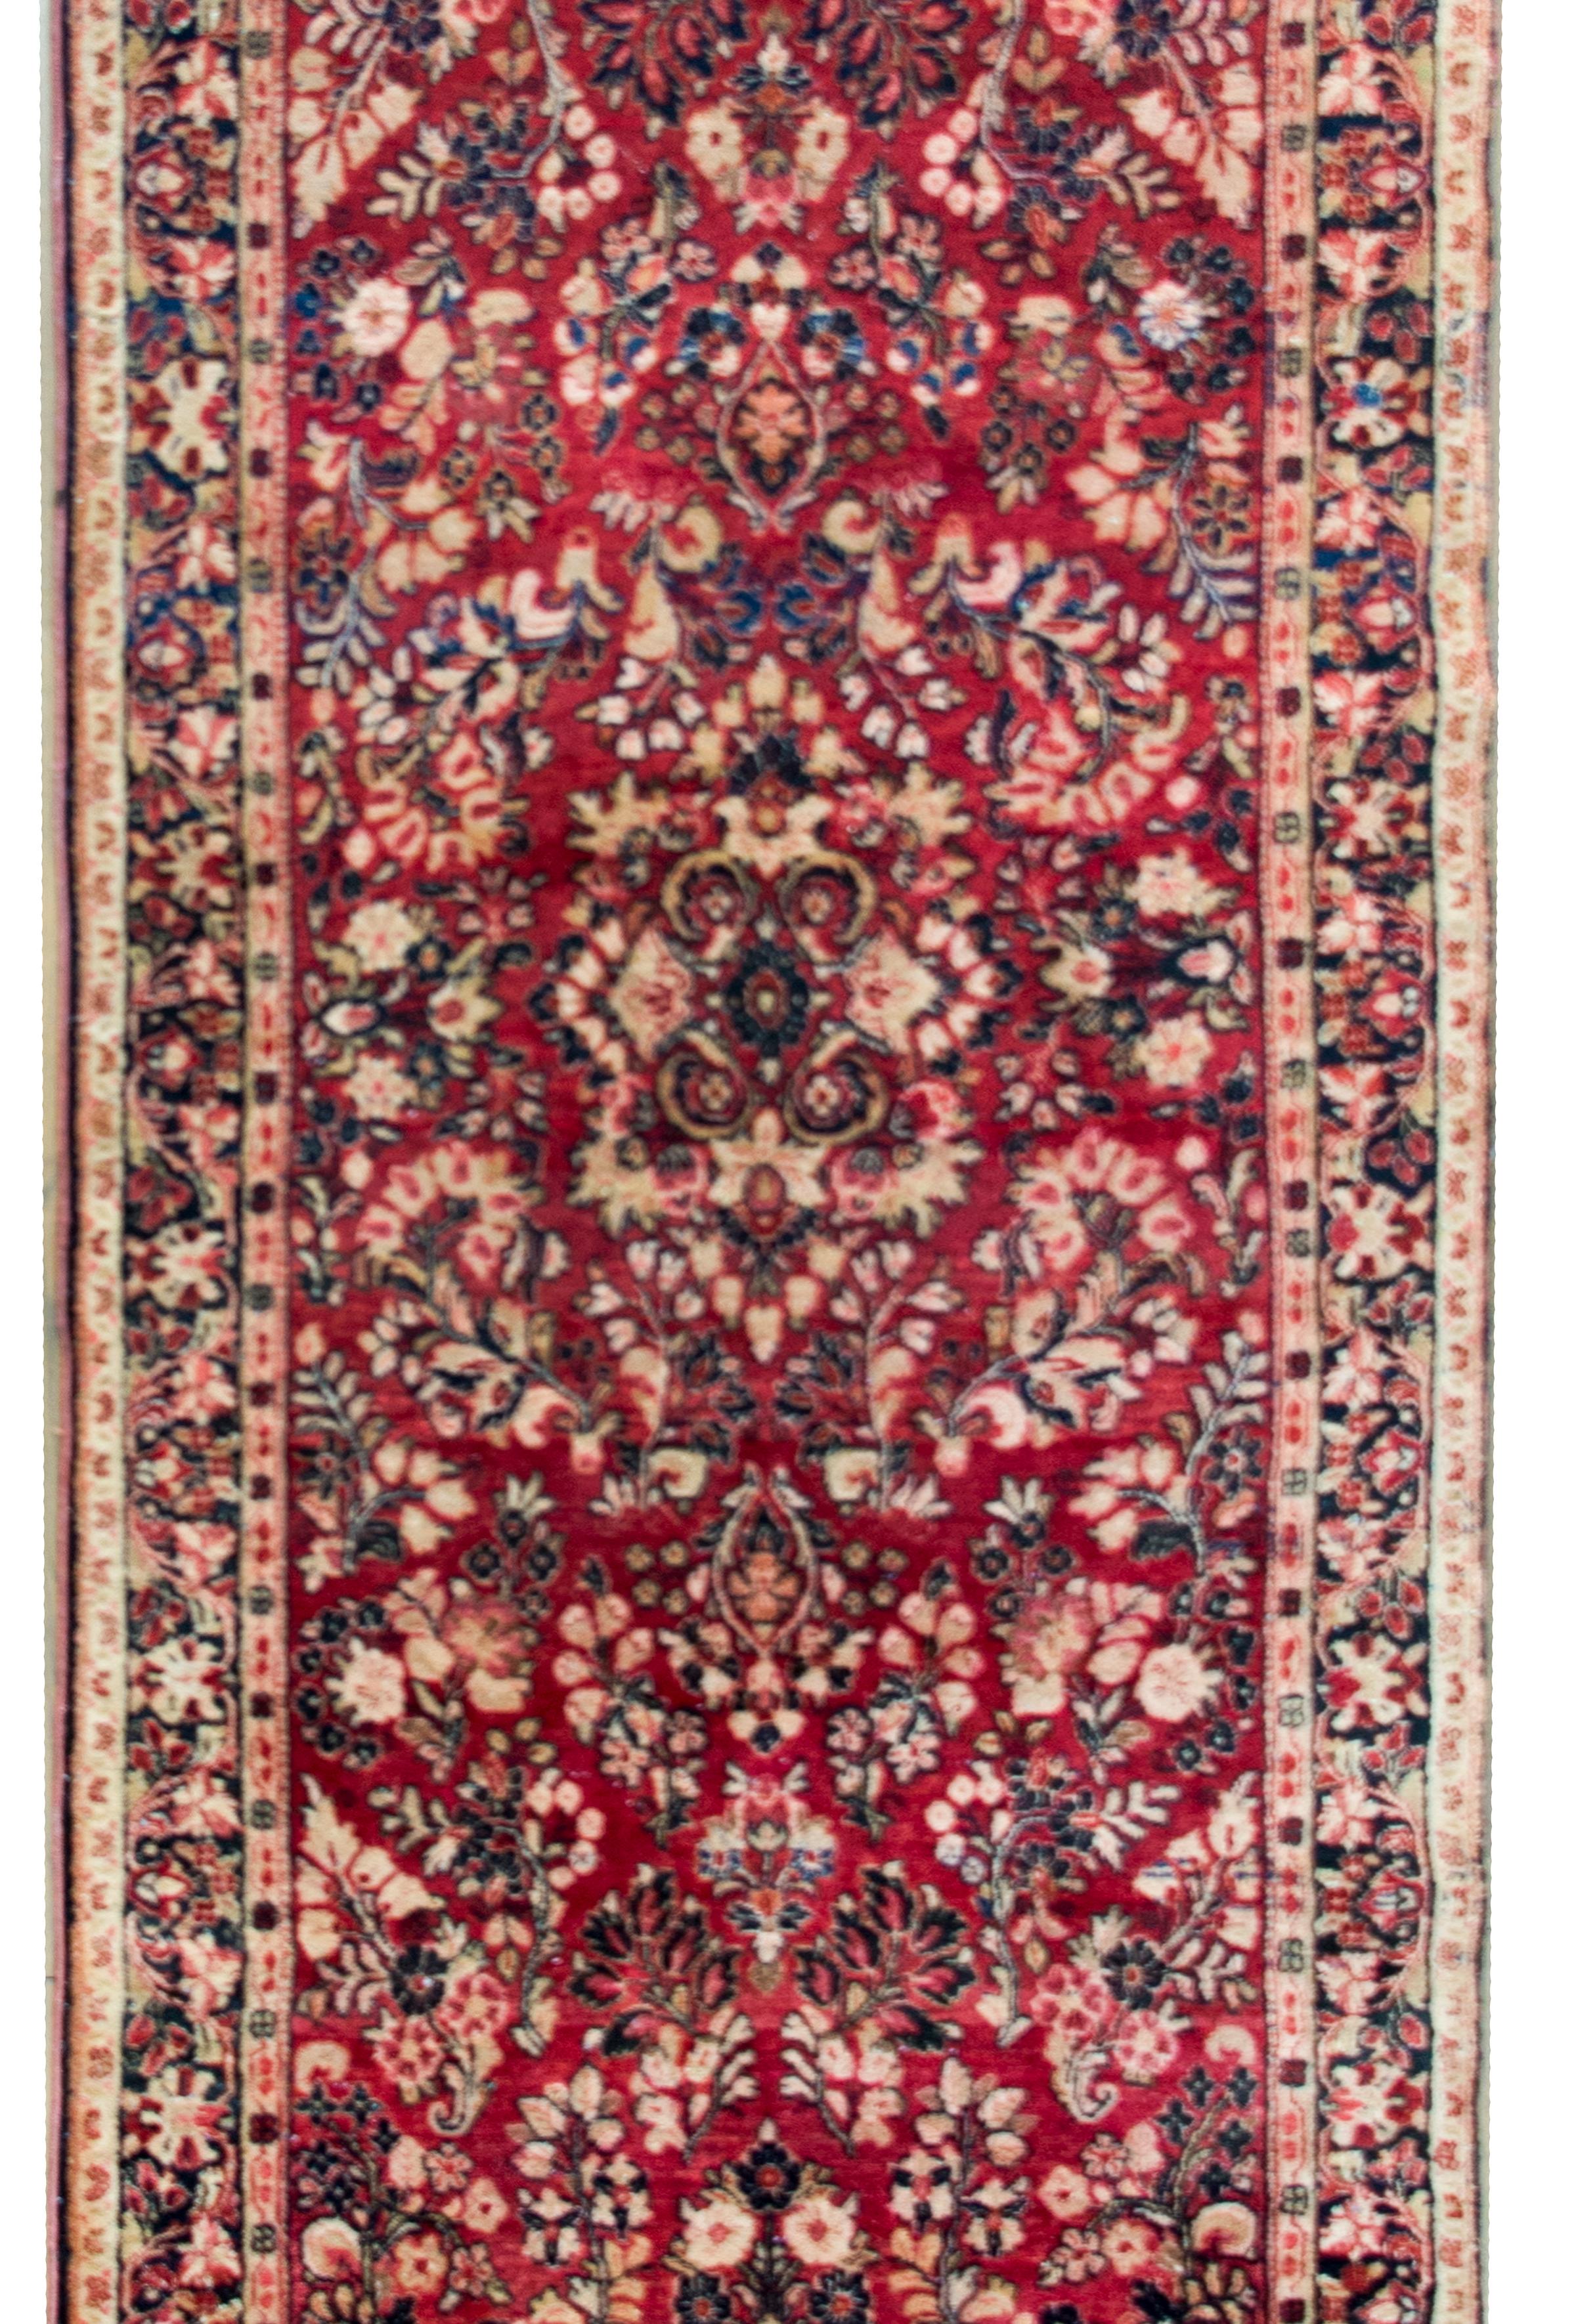 Ein klassischer persischer Sarouk-Teppich aus dem frühen 20. Jahrhundert mit einem spiegelnden Allover-Muster, das unzählige Blumenbüschel enthält, umgeben von einer komplexen Bordüre mit einem breiten, zentralen, floral gemusterten Streifen, der